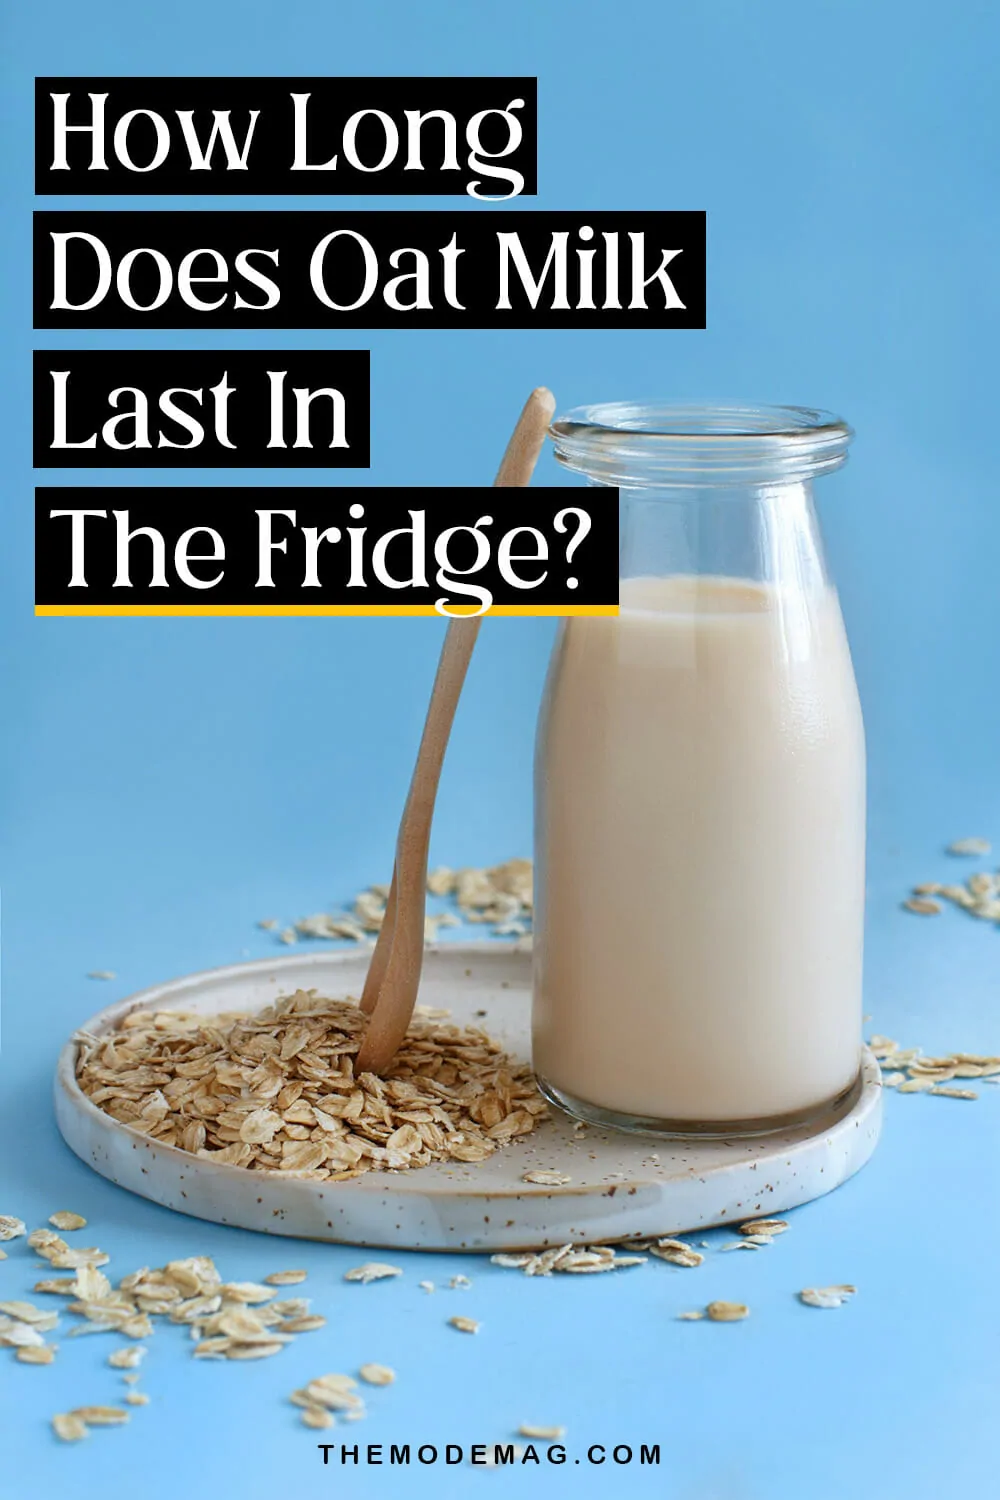 How Long Does Oat Milk Last In The Fridge?